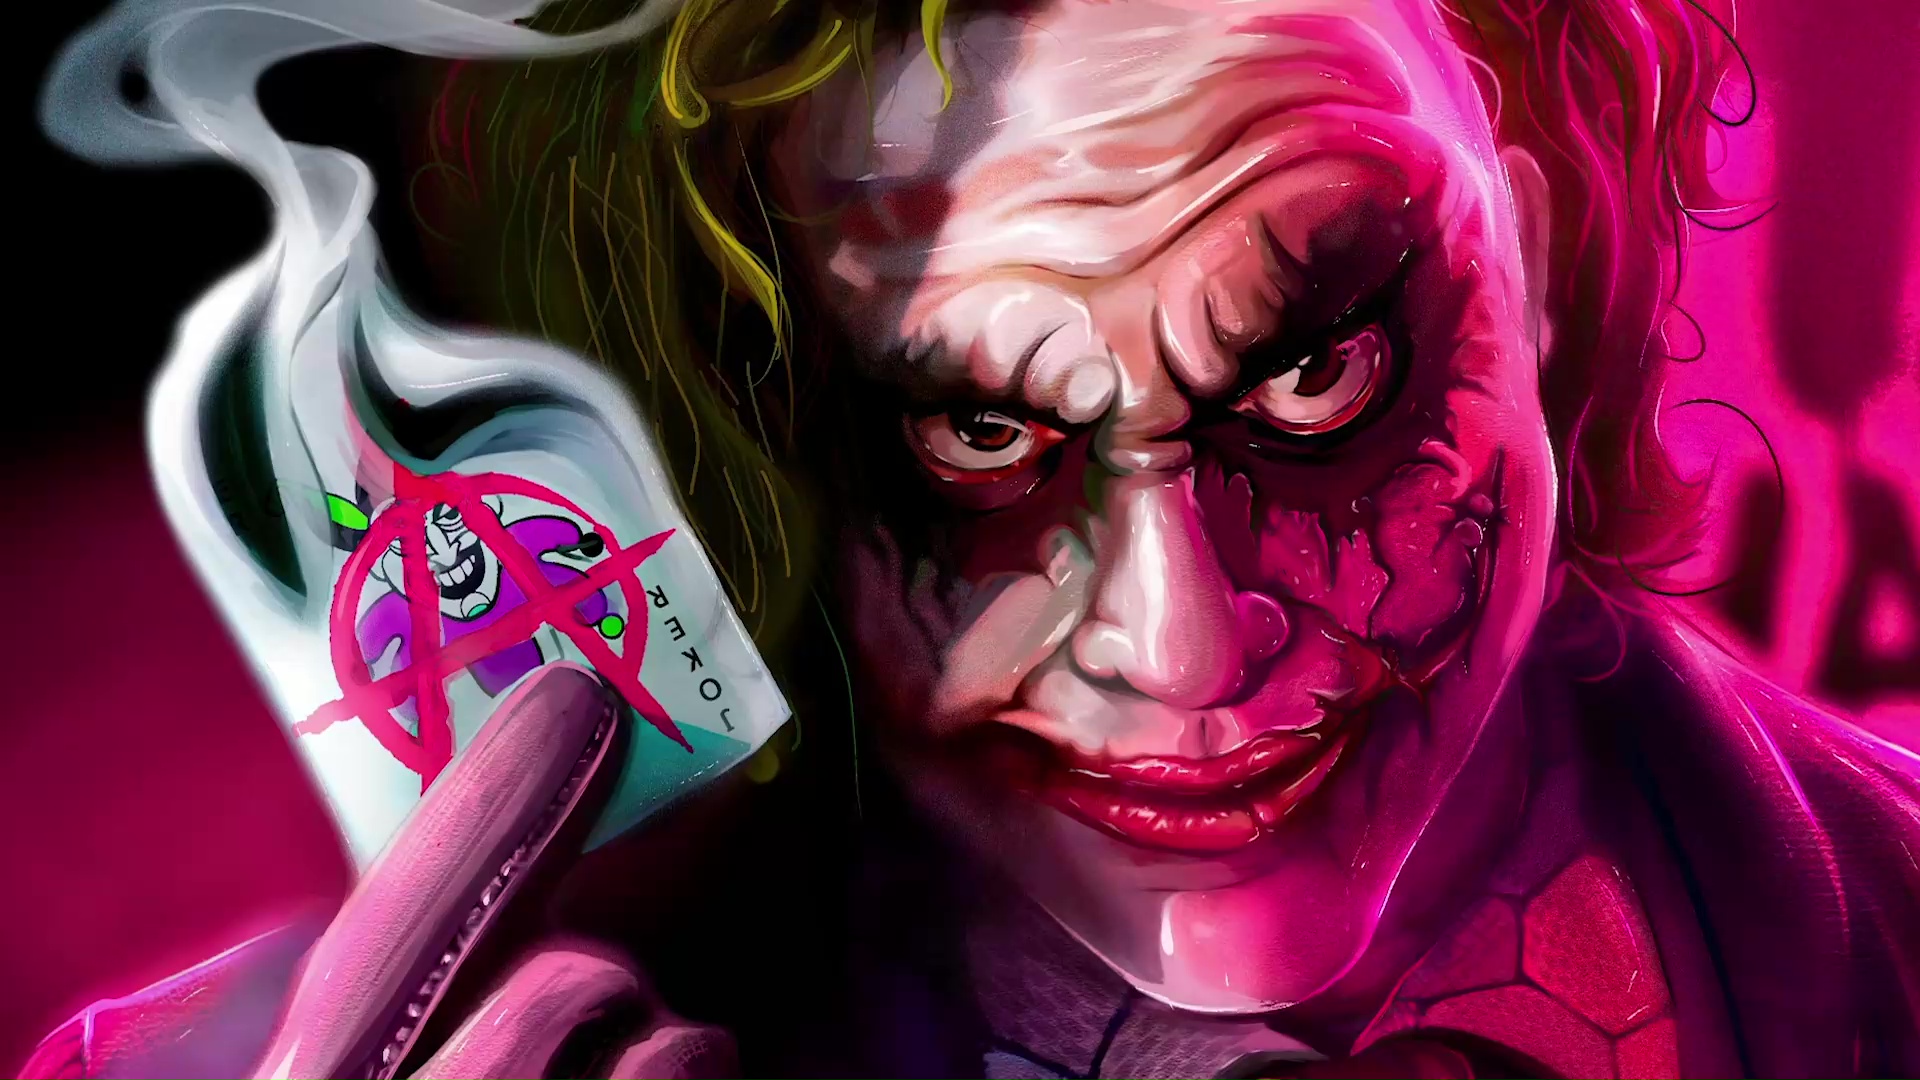 Joker Live Wallpaper by Jimking on DeviantArt